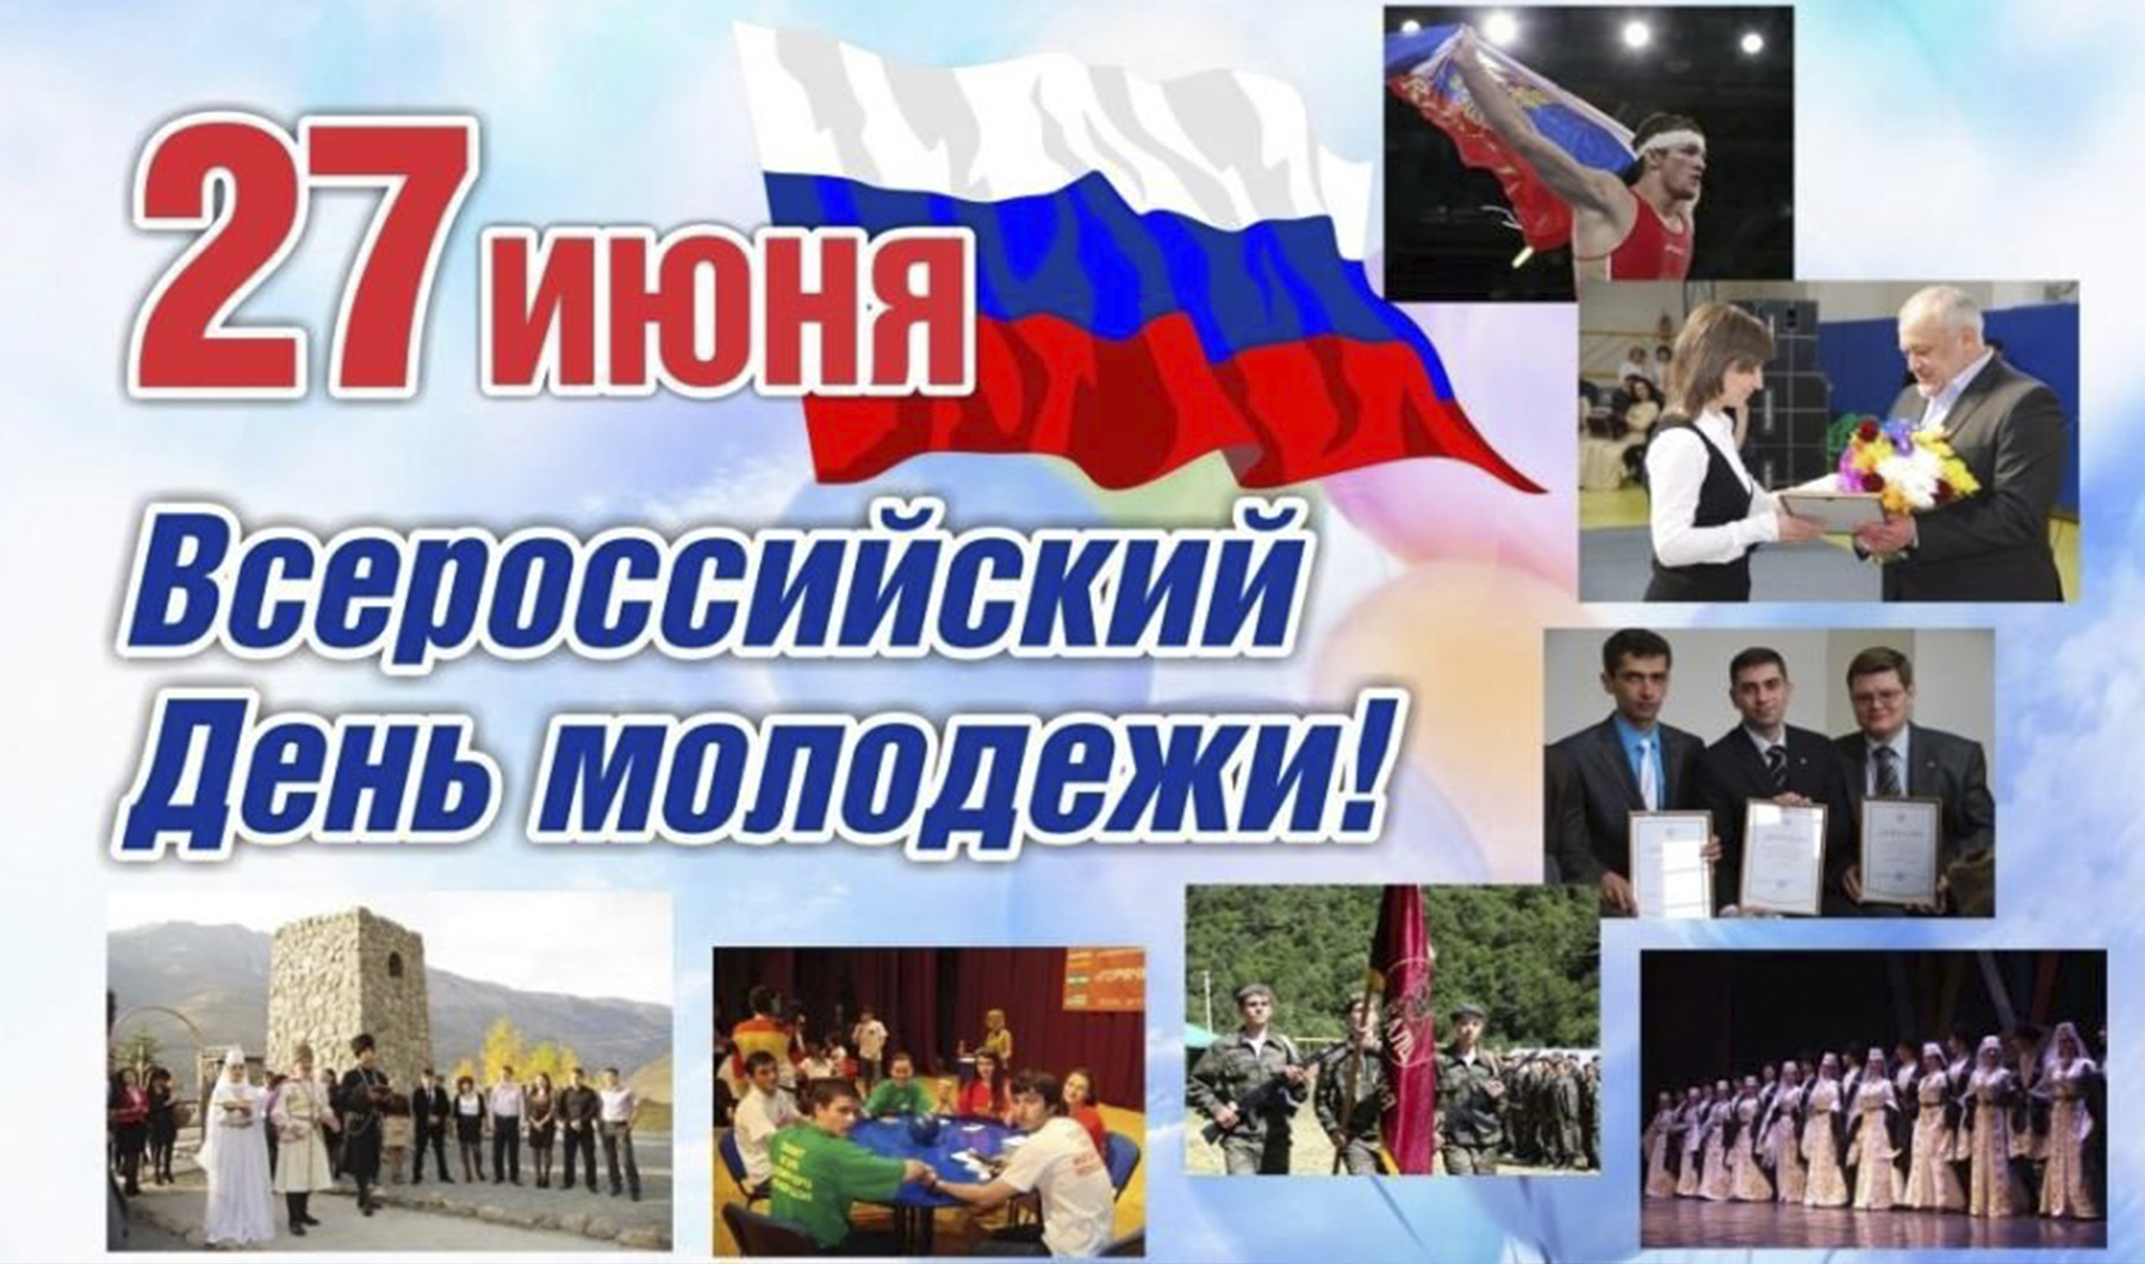 24 27 июня. День молодёжи (Россия). 27 Июня день молодежи России. С днем молодежи. С днём молодёжи картинки.